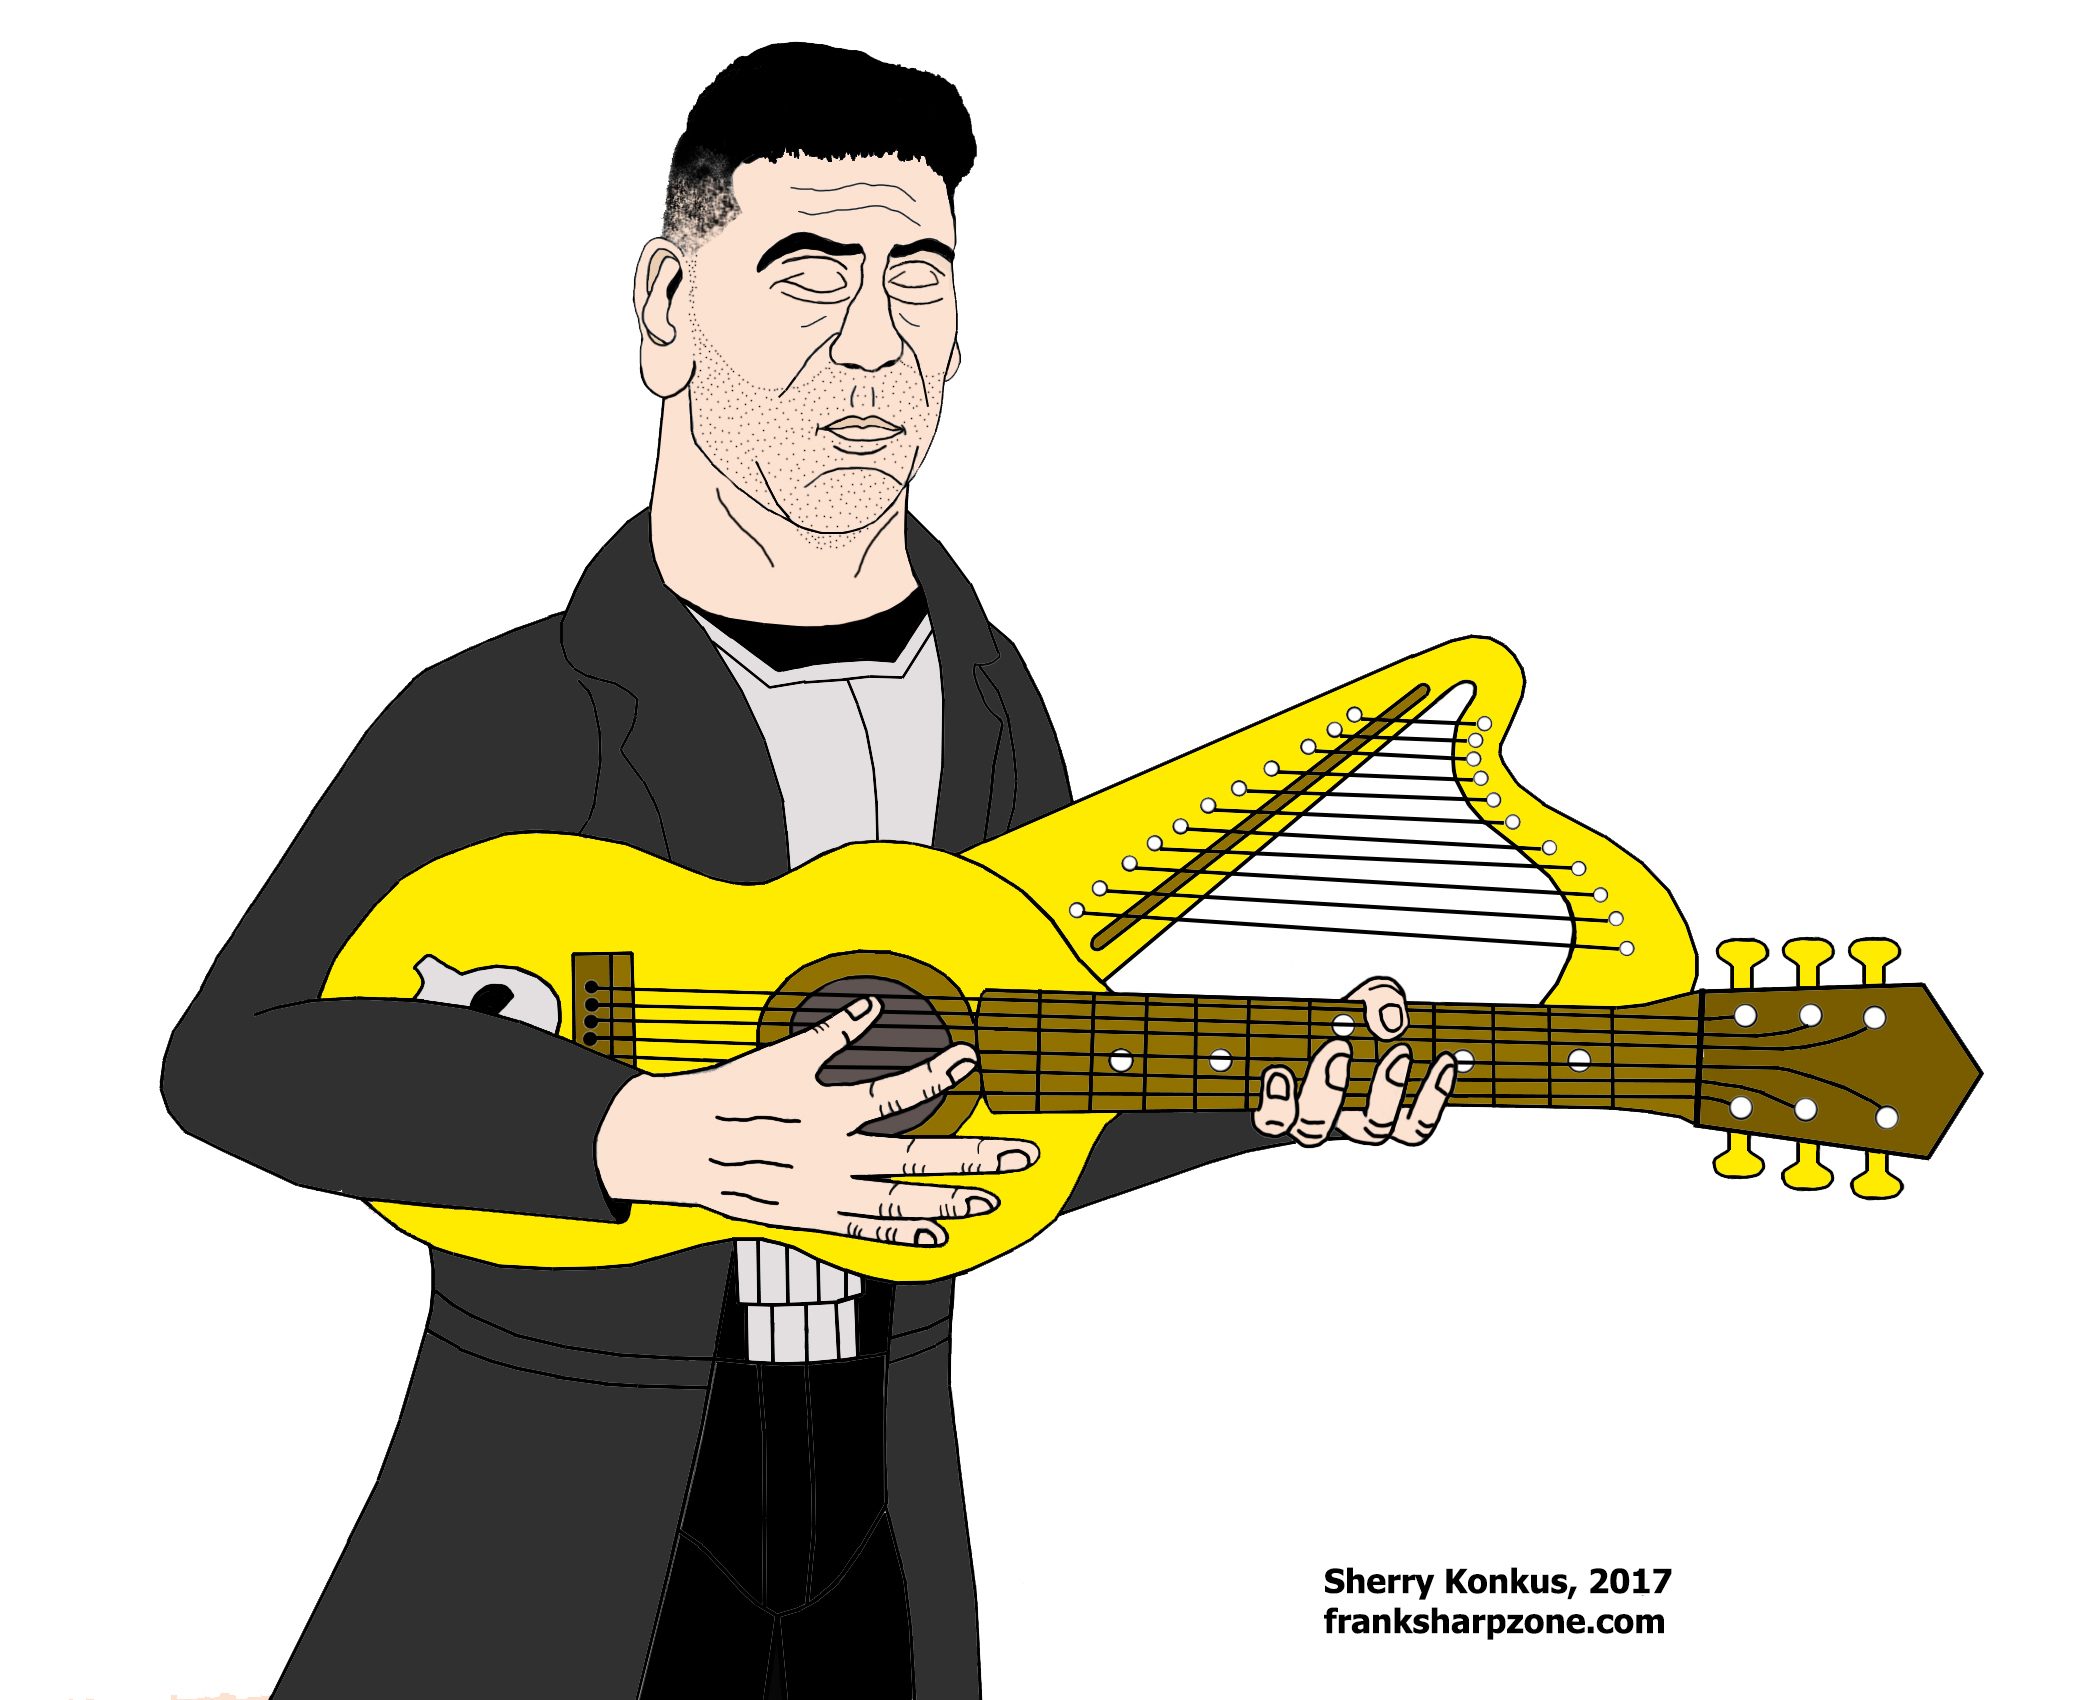 NEW PUNISHER HARP ART: The Punisher's Harp Guitar!